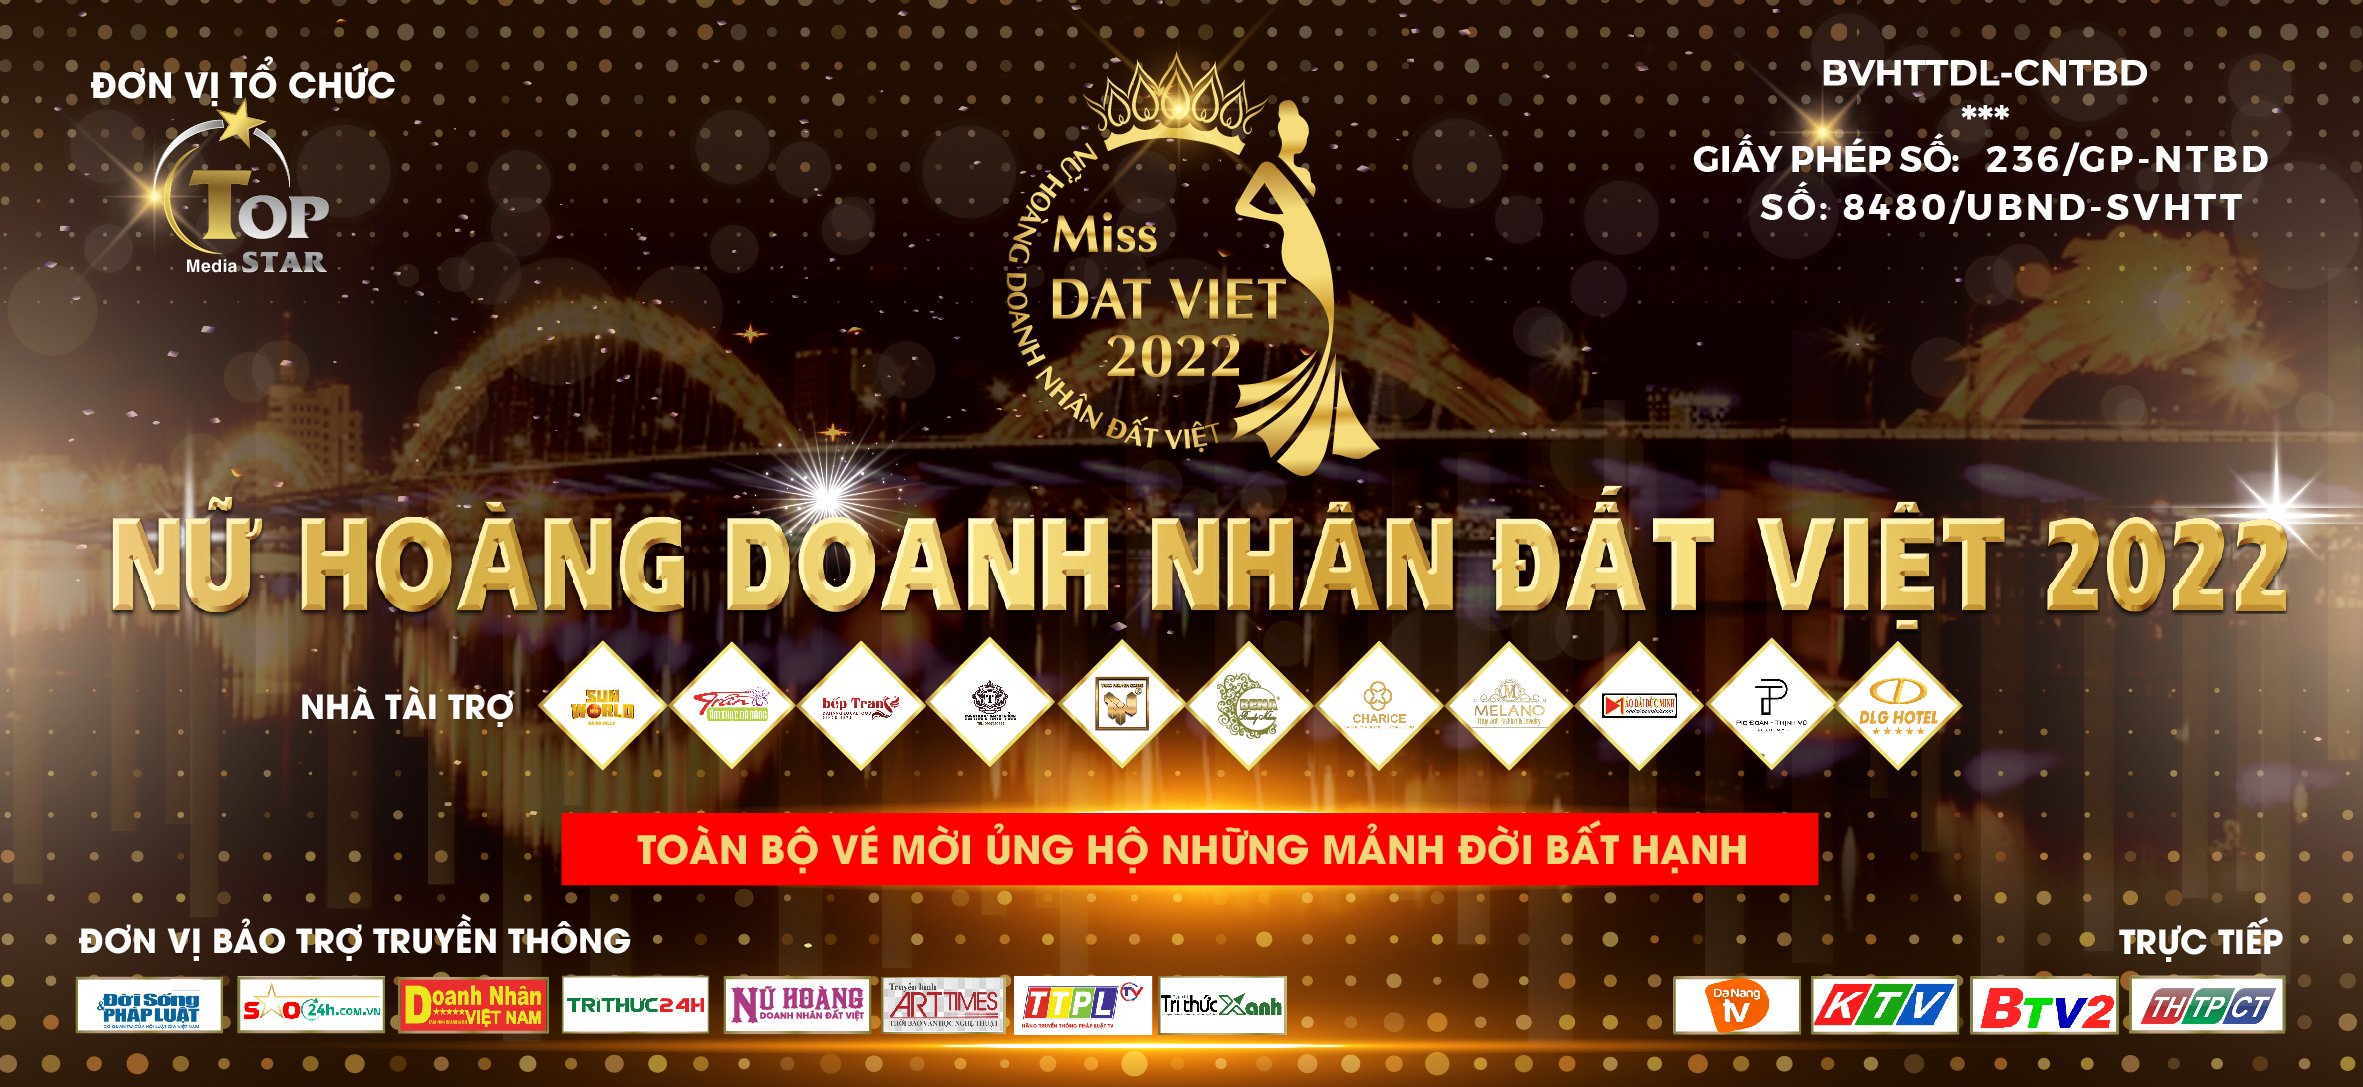 Háo hức chờ đợi đêm chung kết "Nữ hoàng Doanh nhân Đất Việt 2022" tại Đà Nẵng